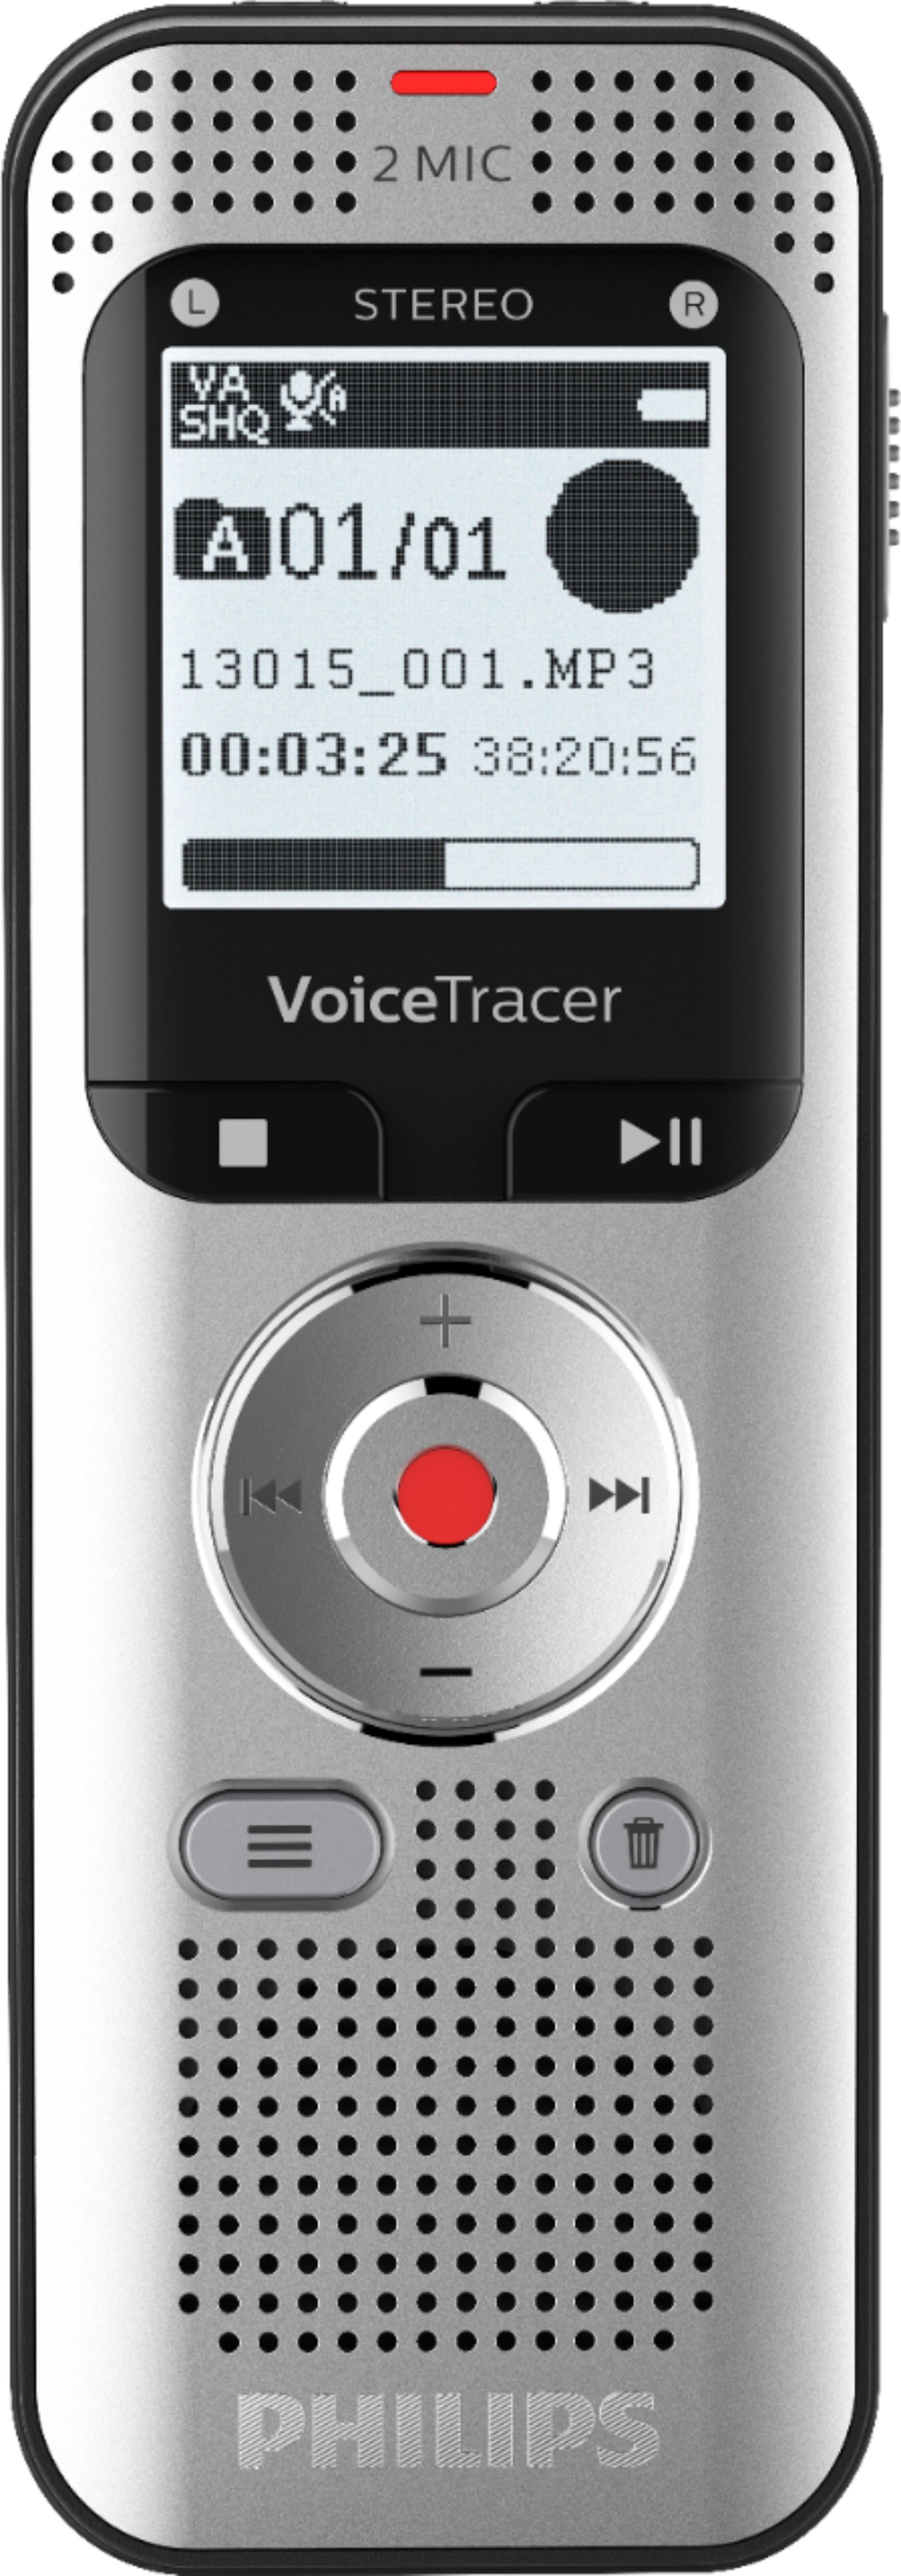 Month defeat Atlas Philips VoiceTracer Digital Voice Recorder 8GB DVT2050 Light Silver & Black  DVT2050 - Best Buy